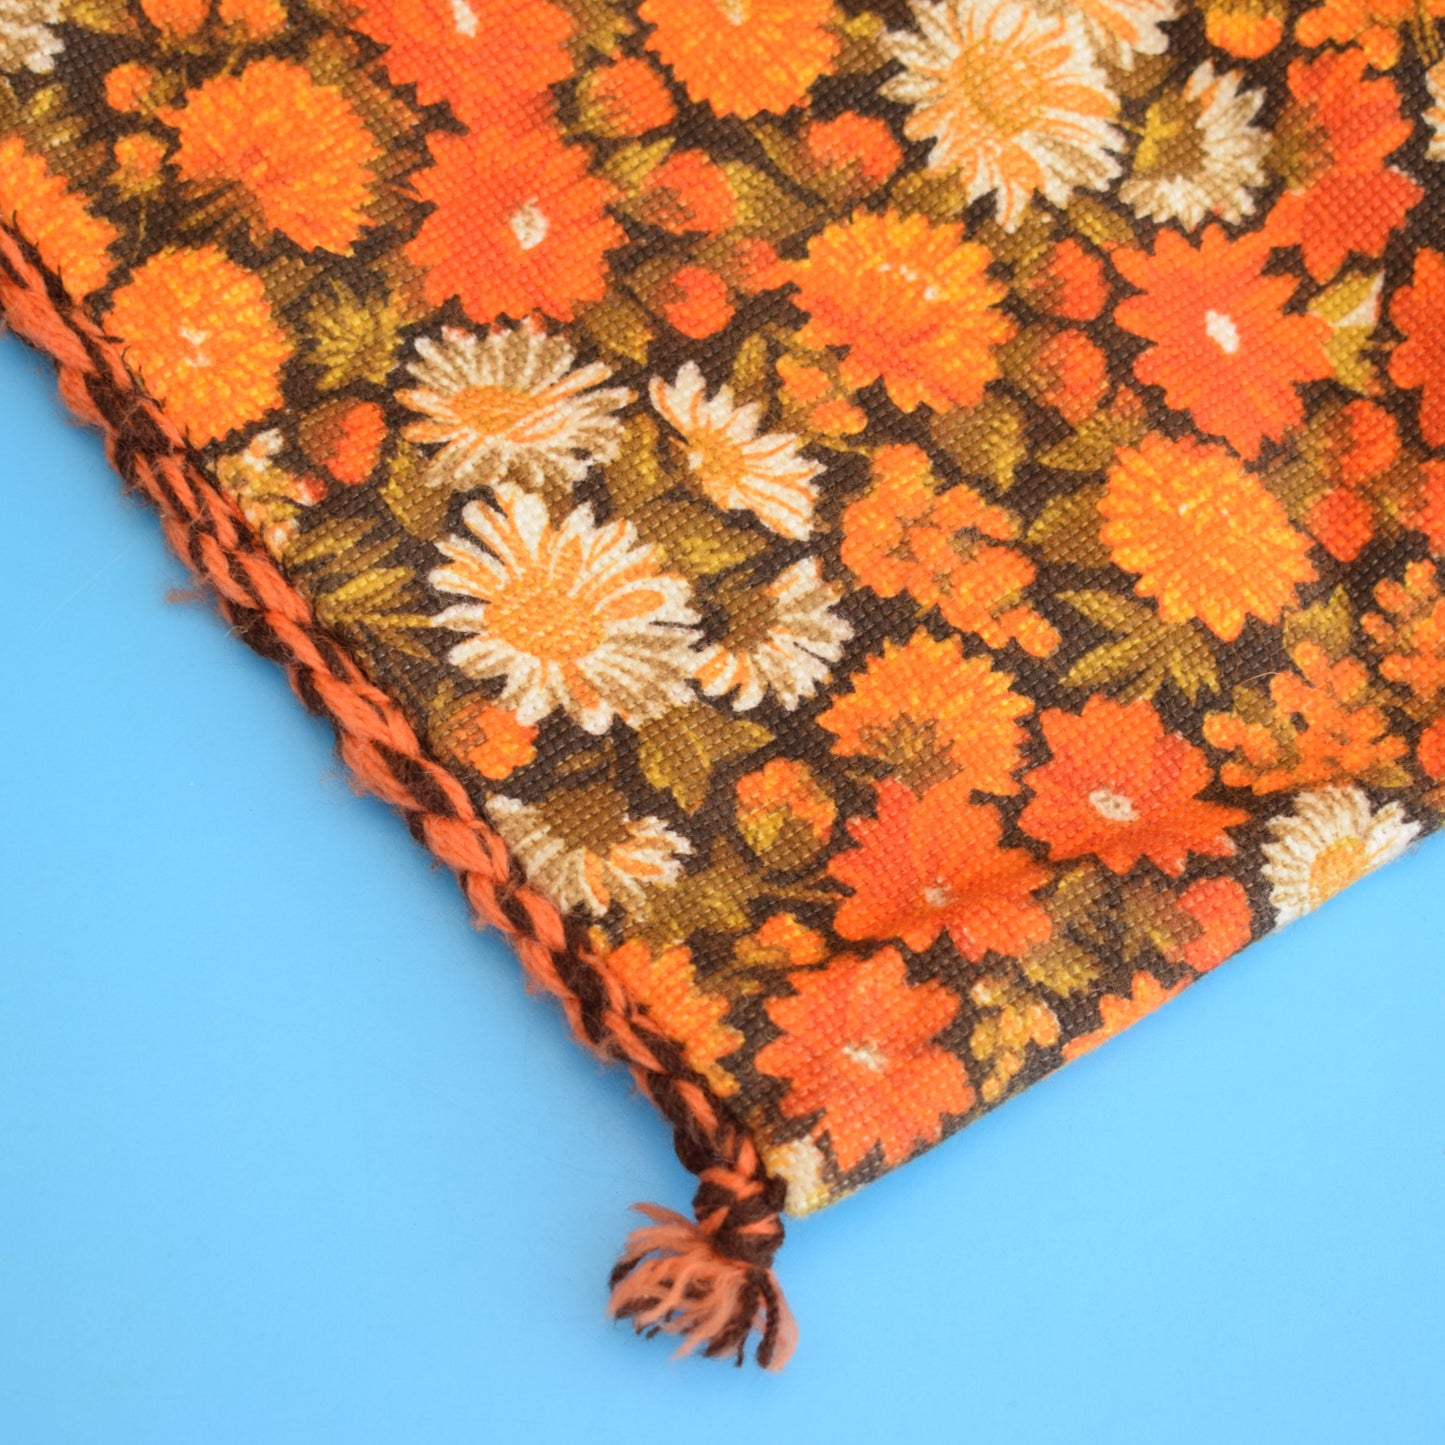 Vintage 1970s Shoulder Bag - Orange Flowers